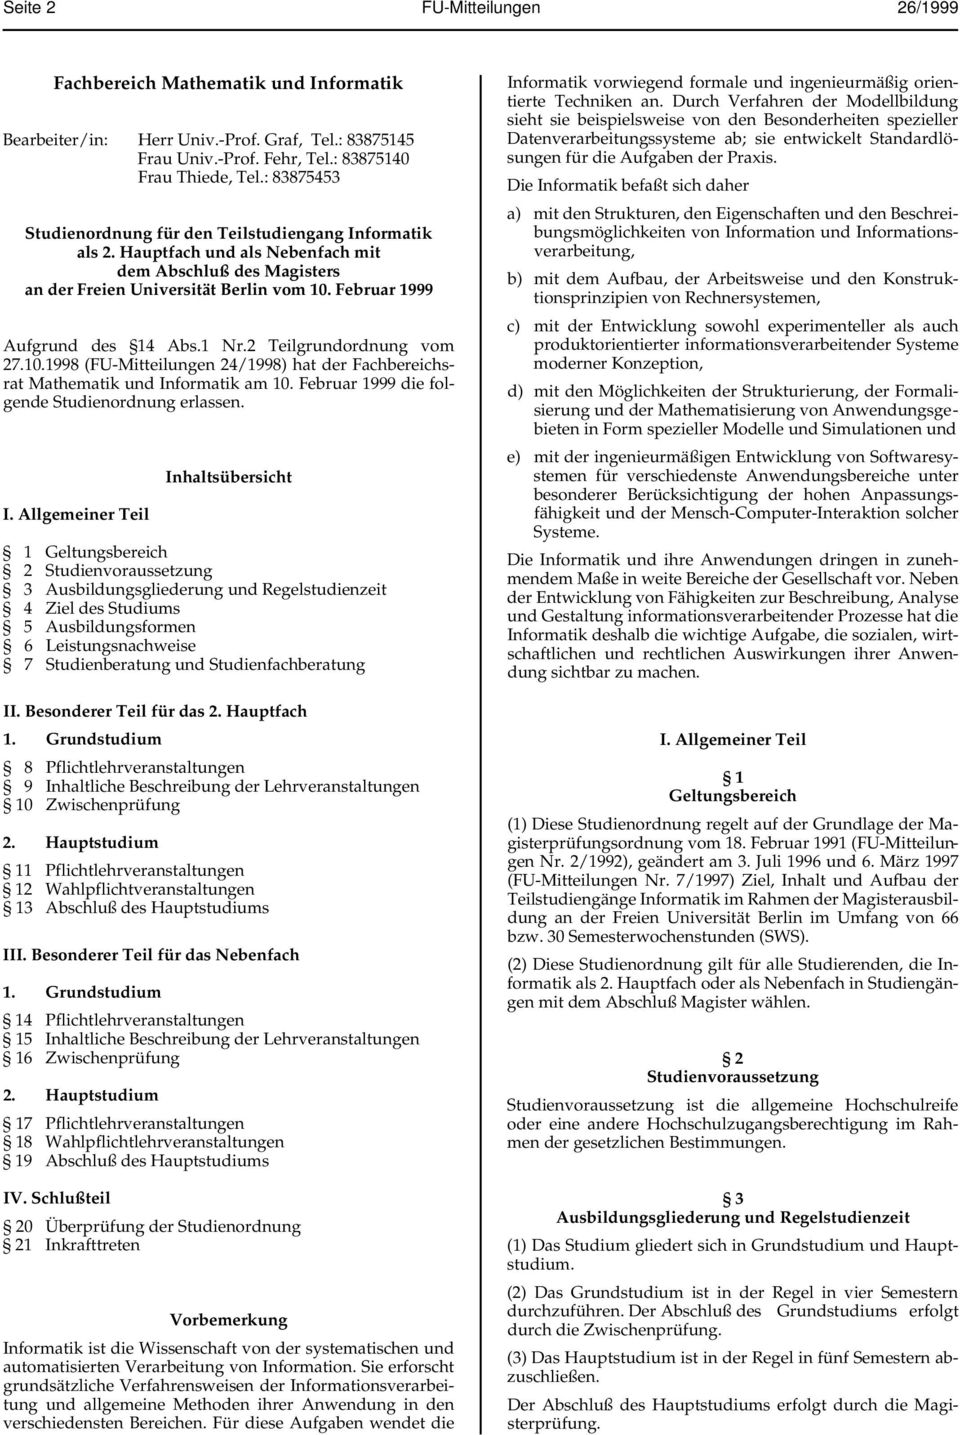 1 Nr.2 Teilgrundordnung vom 27.10.1998 (F-Mitteilungen 24/1998) hat der Fachbereichsrat Mathematik und In